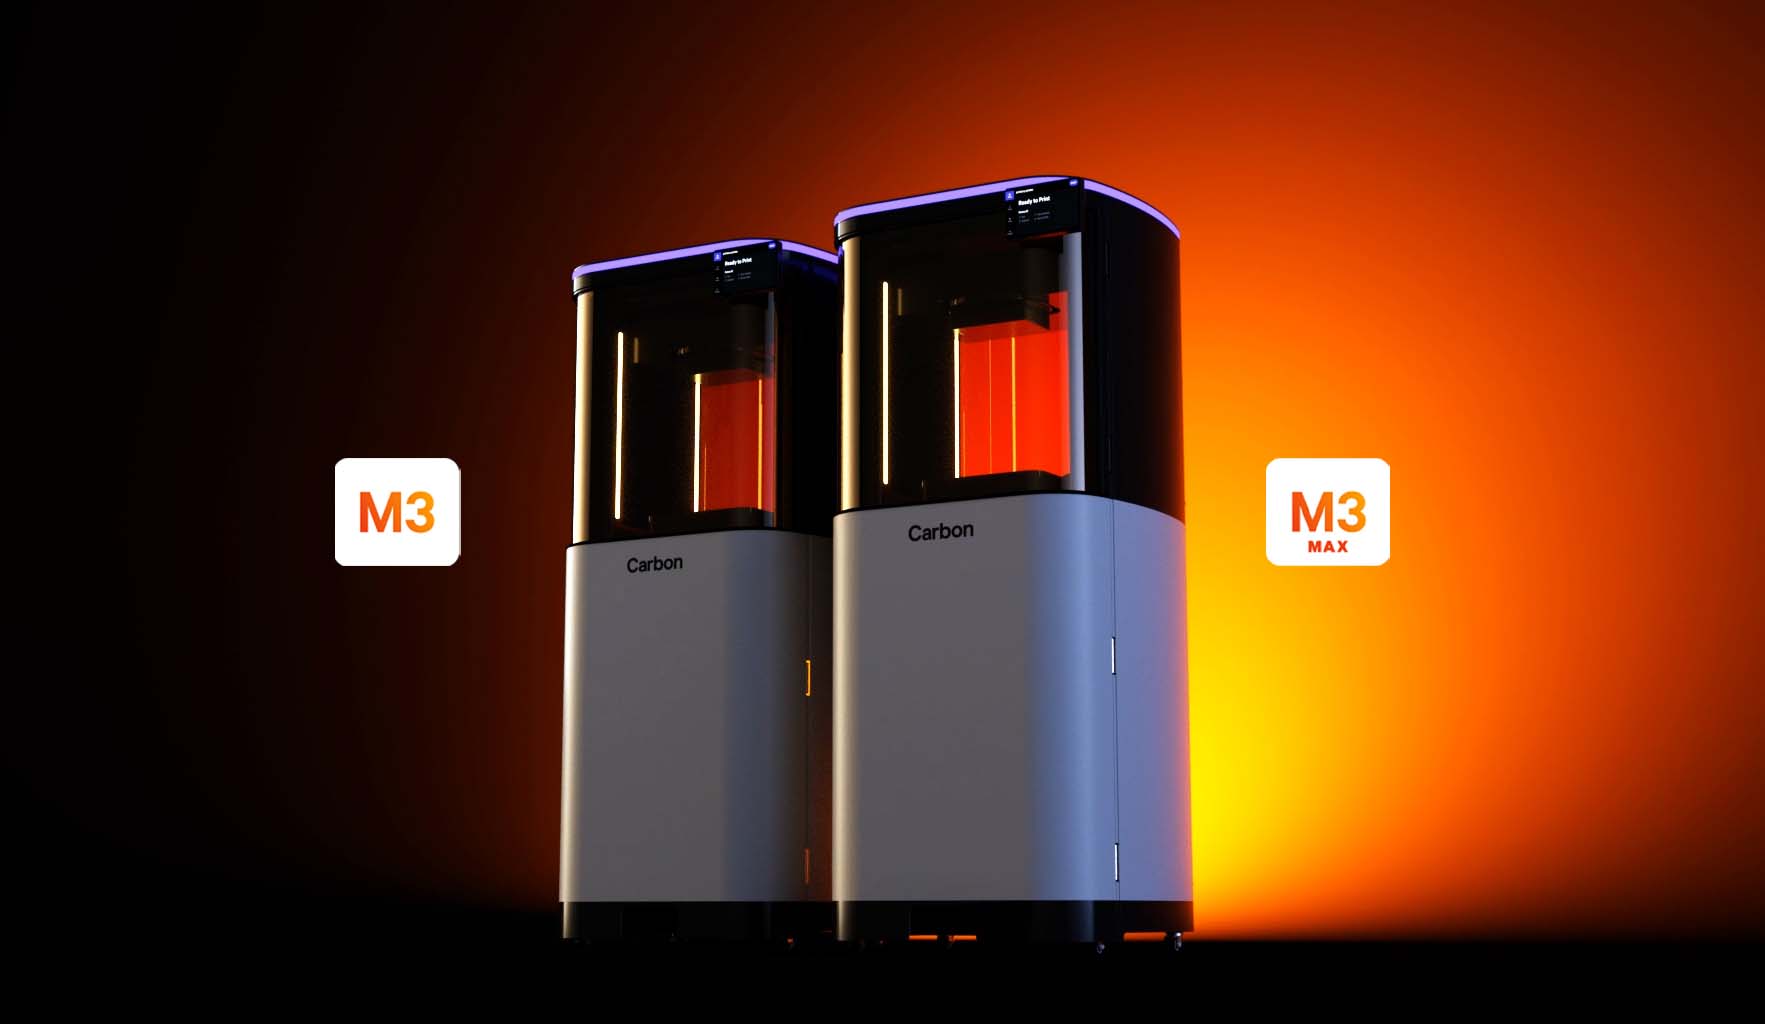 Carbon社から販売された3Dプリンター「M3」と「M3 Max」の外観。白黒の洗練された、縦長デザイン